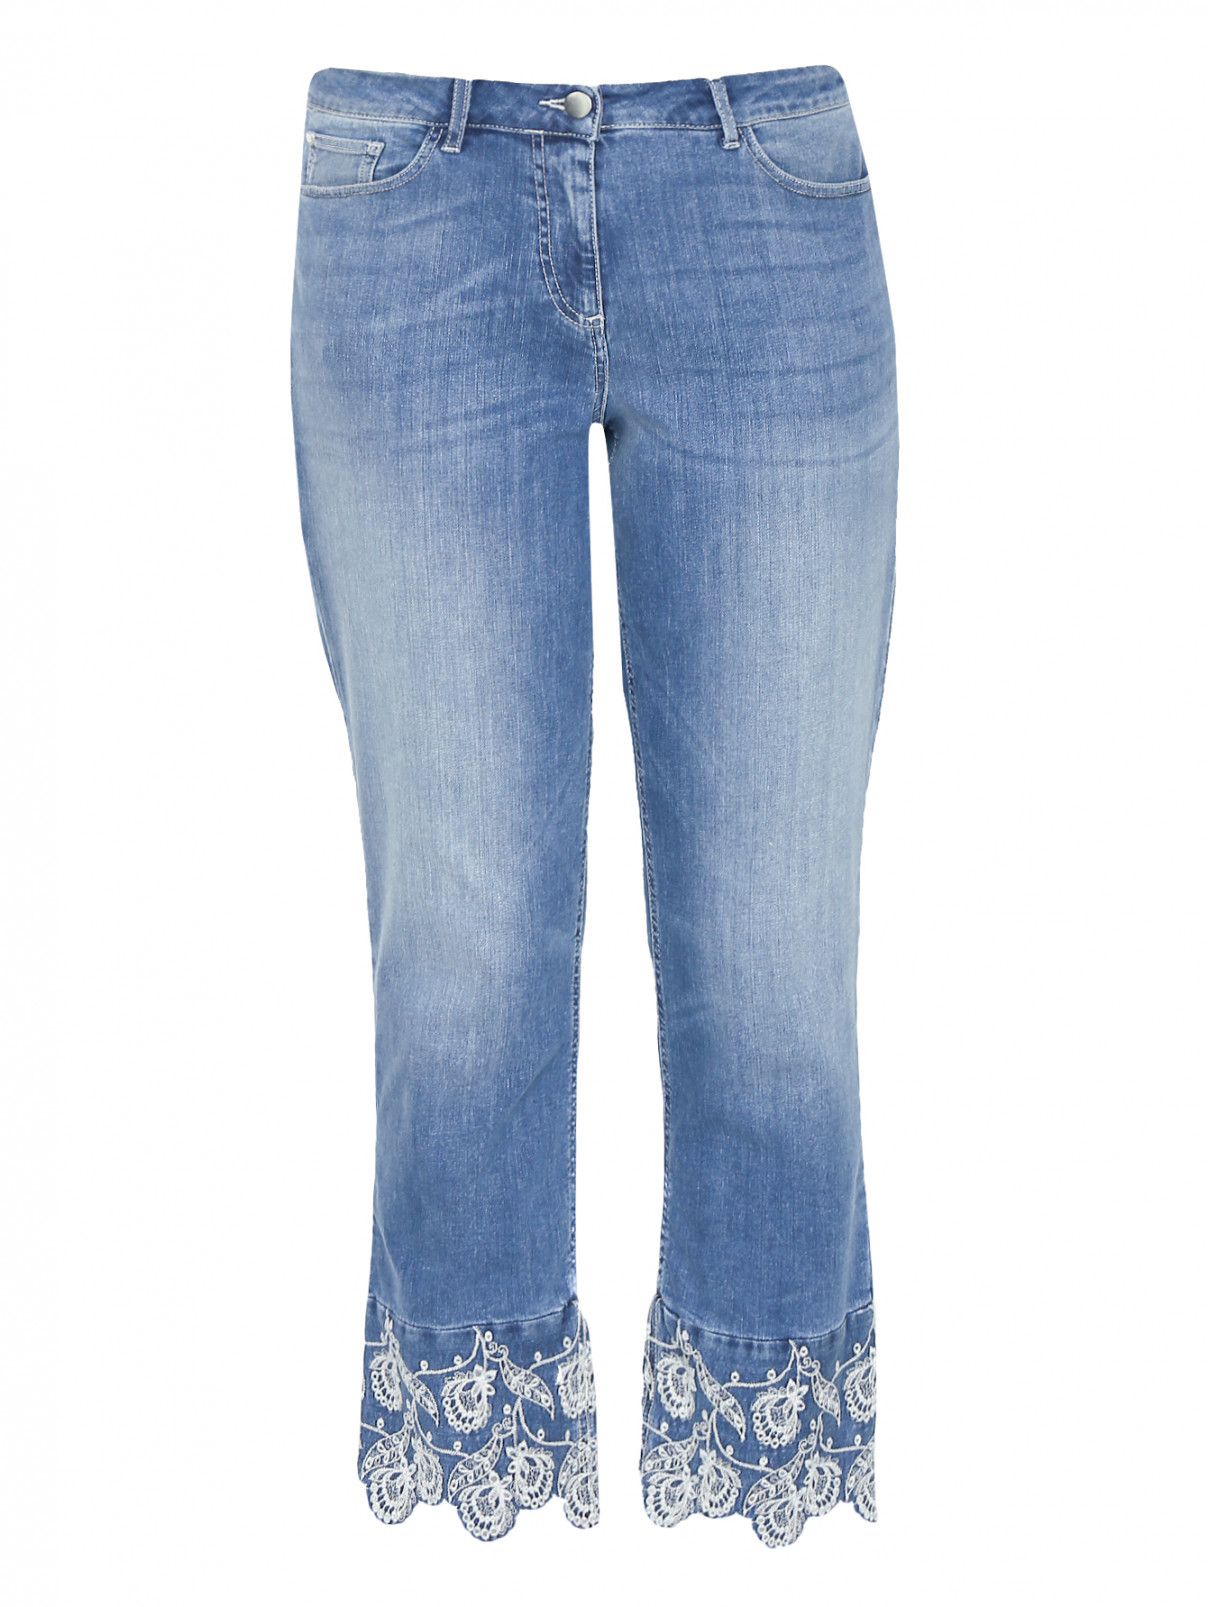 Укороченные джинсы с вышивкой Persona by Marina Rinaldi  –  Общий вид  – Цвет:  Синий